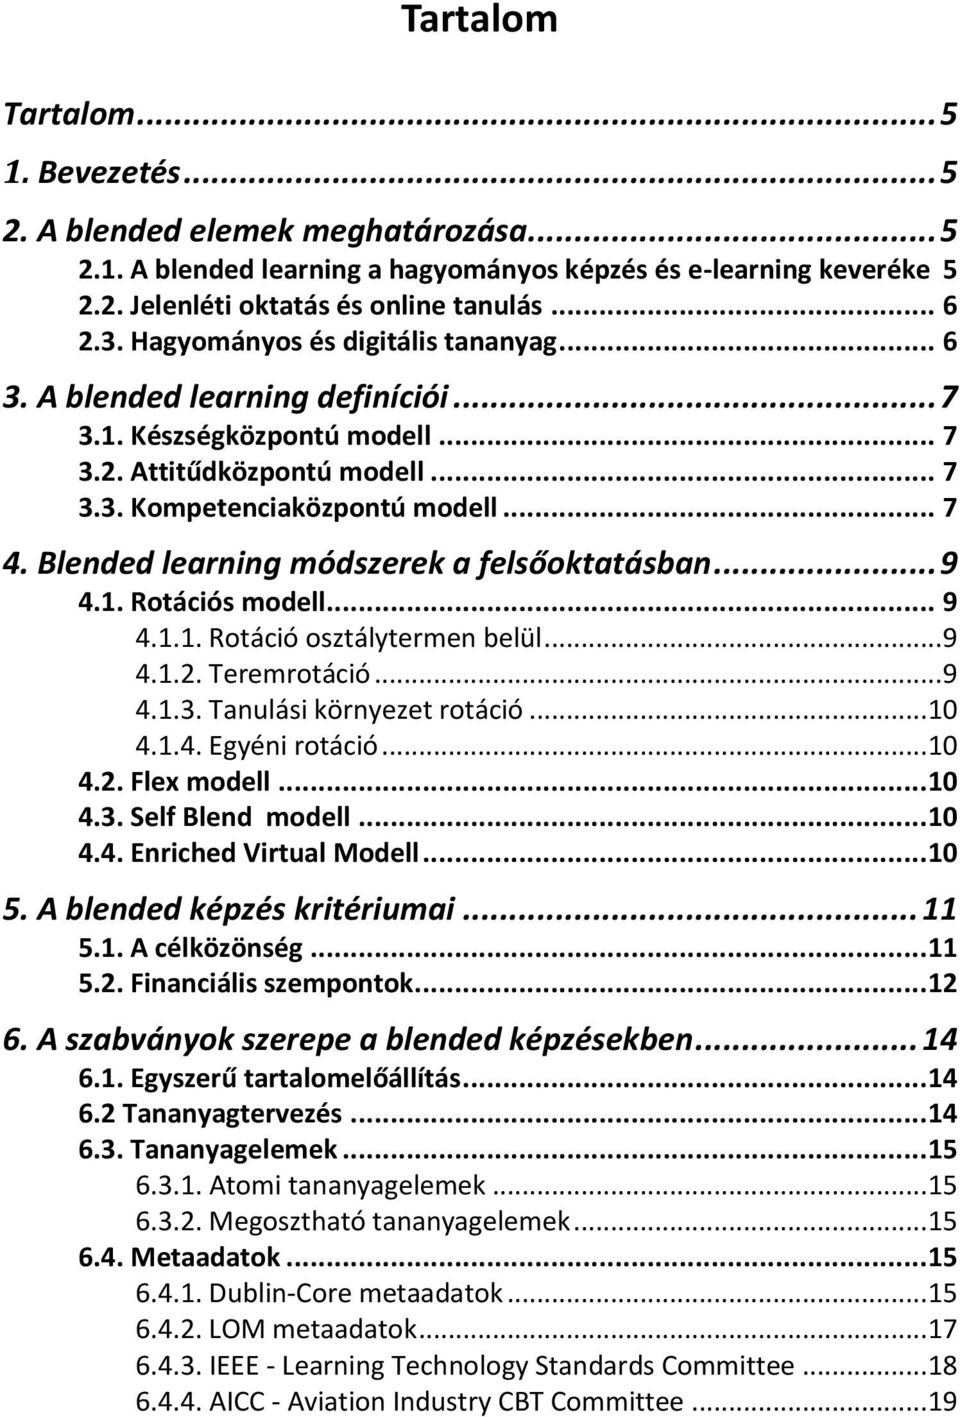 Blended learning módszerek a felsőoktatásban... 9 4.1. Rotációs modell... 9 4.1.1. Rotáció osztálytermen belül... 9 4.1.2. Teremrotáció... 9 4.1.3. Tanulási környezet rotáció... 10 4.1.4. Egyéni rotáció.